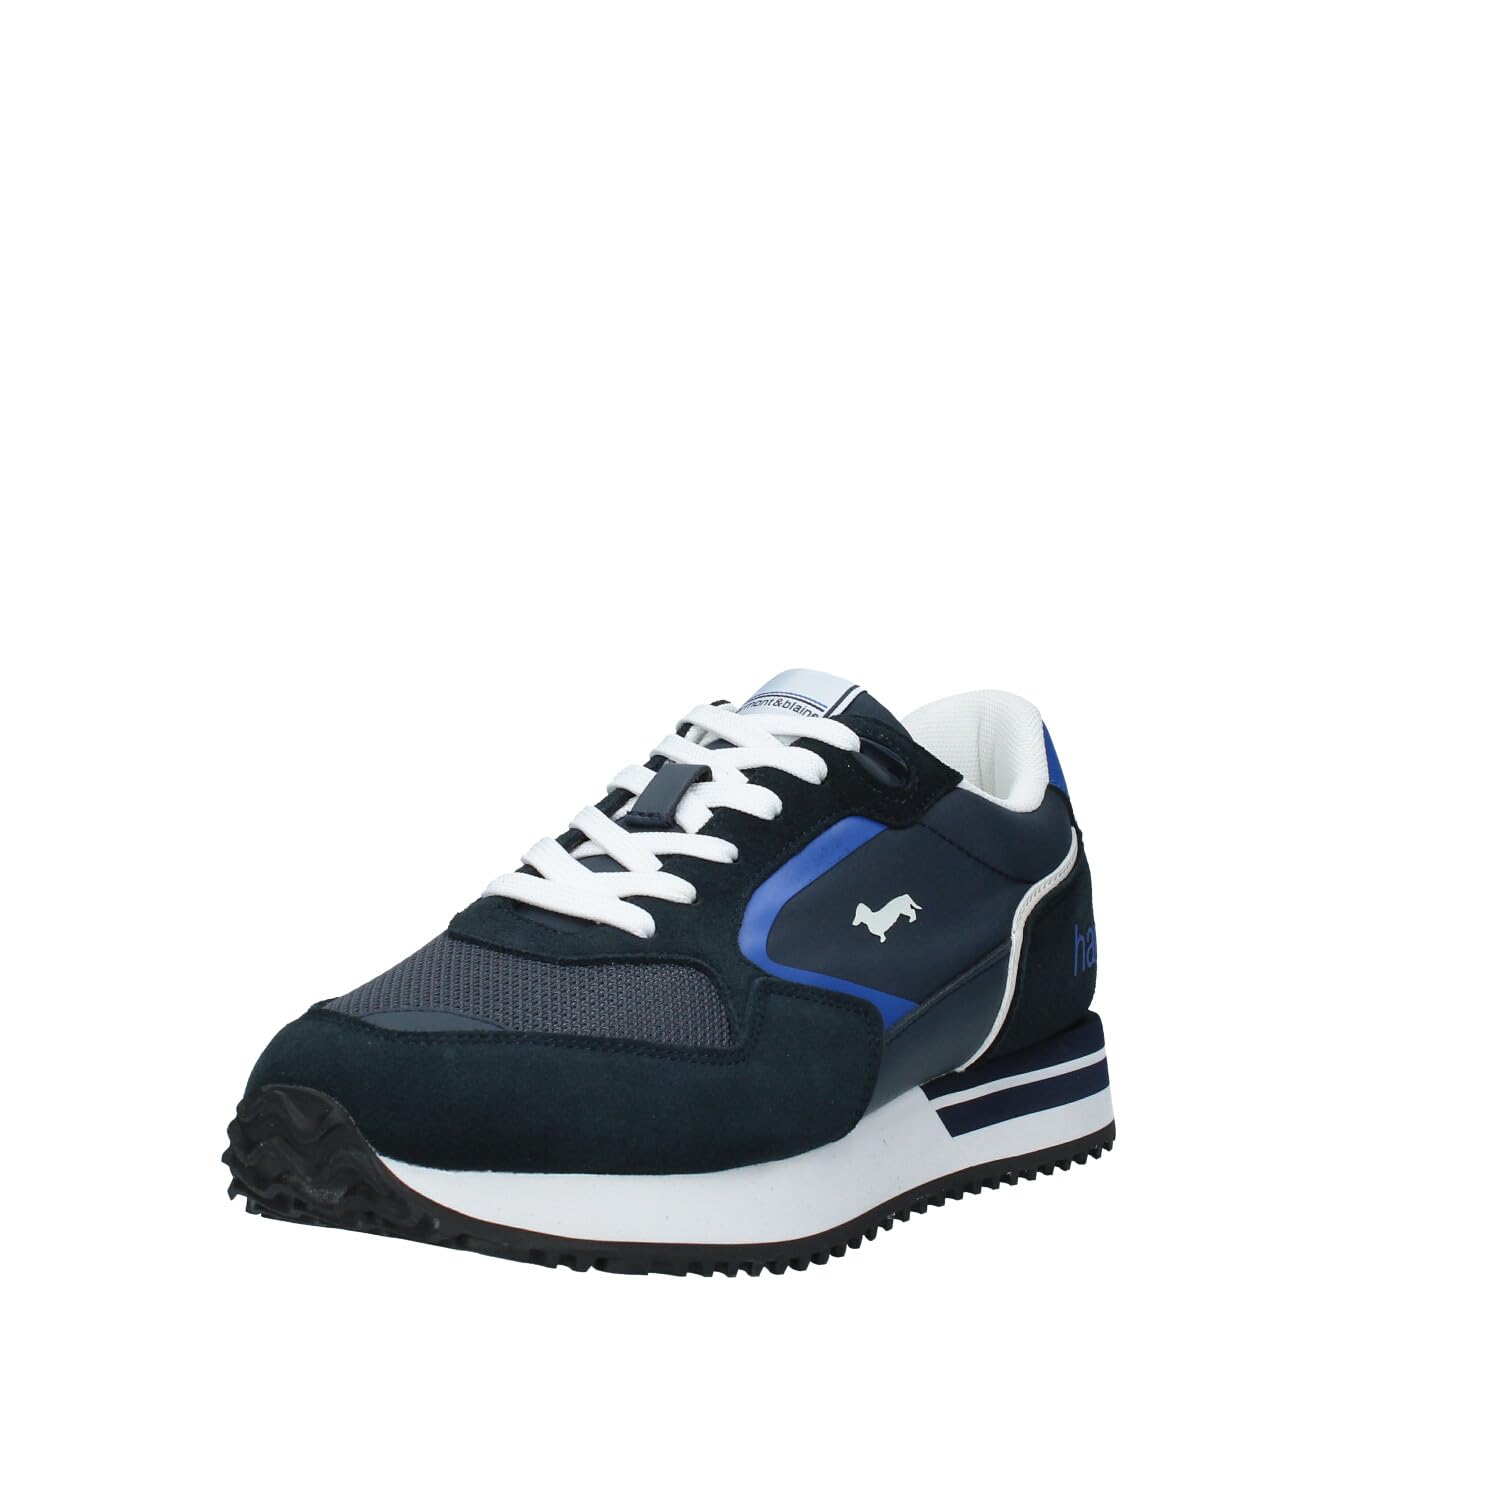 Harmont & Blaine EFM241.050.6200 Herren Sneaker, blau, 43 EU